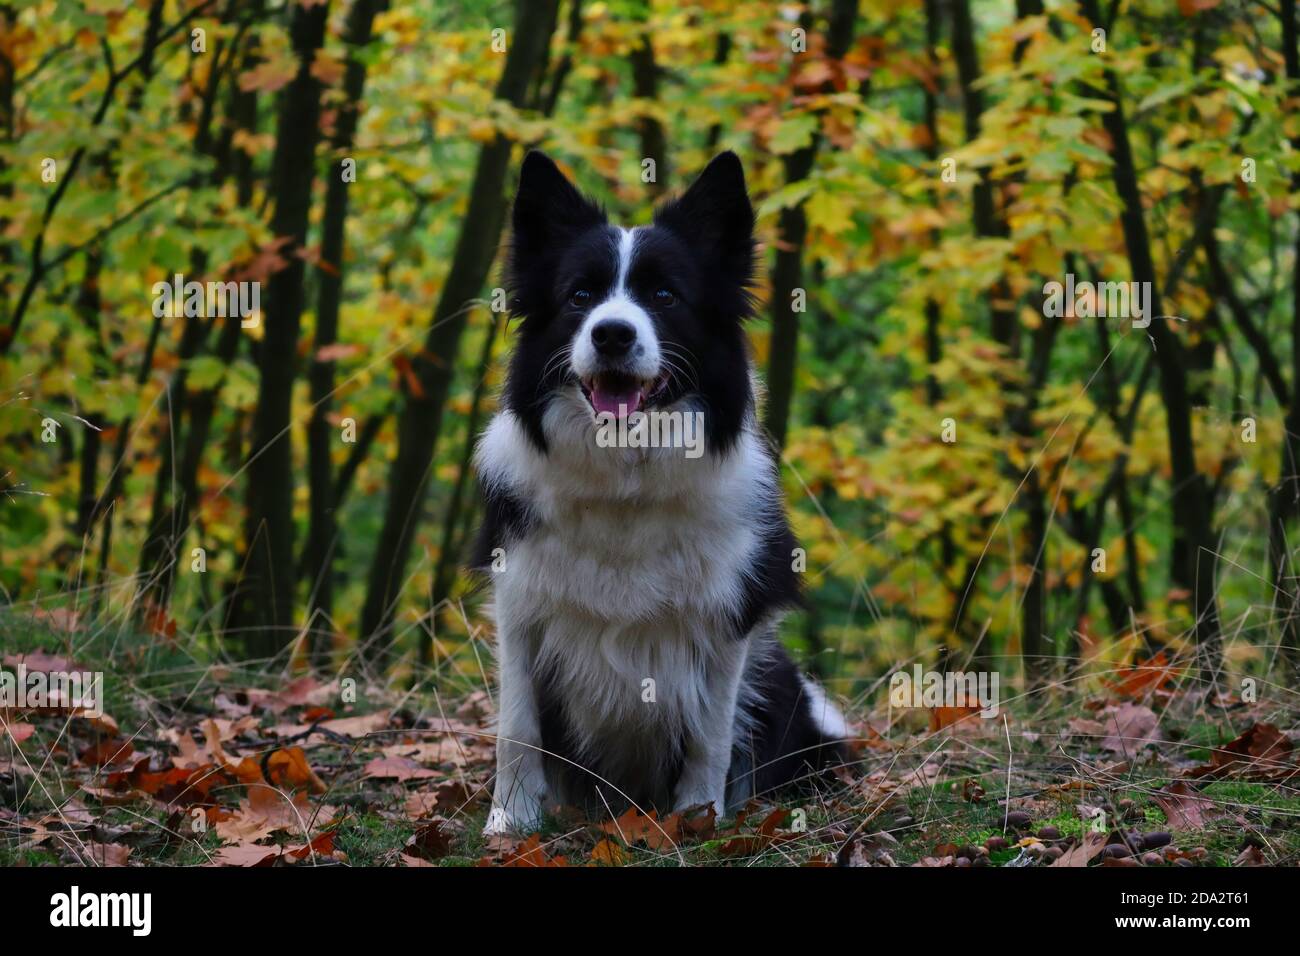 L'adorable Border Collie se trouve dans la forêt colorée pendant la saison d'automne. Ambiance d'automne avec Happy Black and White Dog souriant dans la nature. Banque D'Images